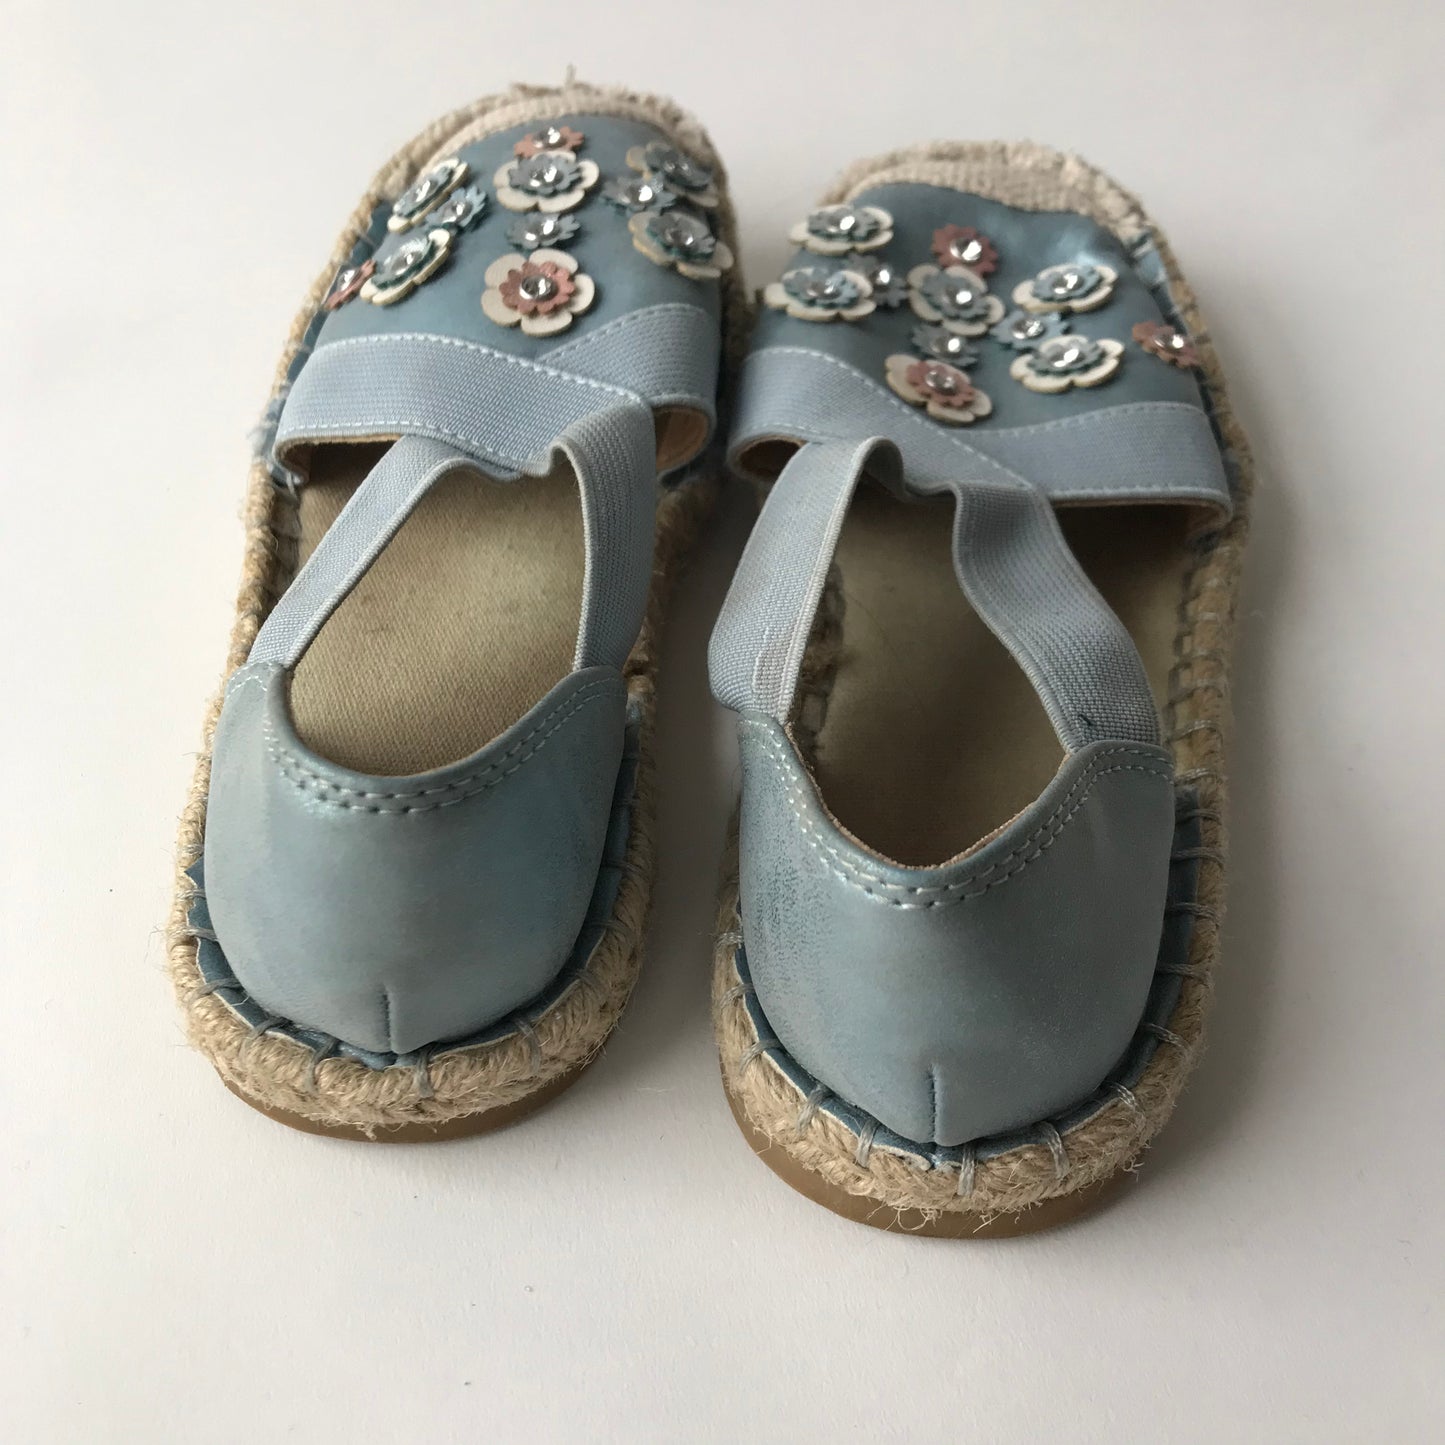 Sandals - Blue Floral - Shoe Size 12 (jr)